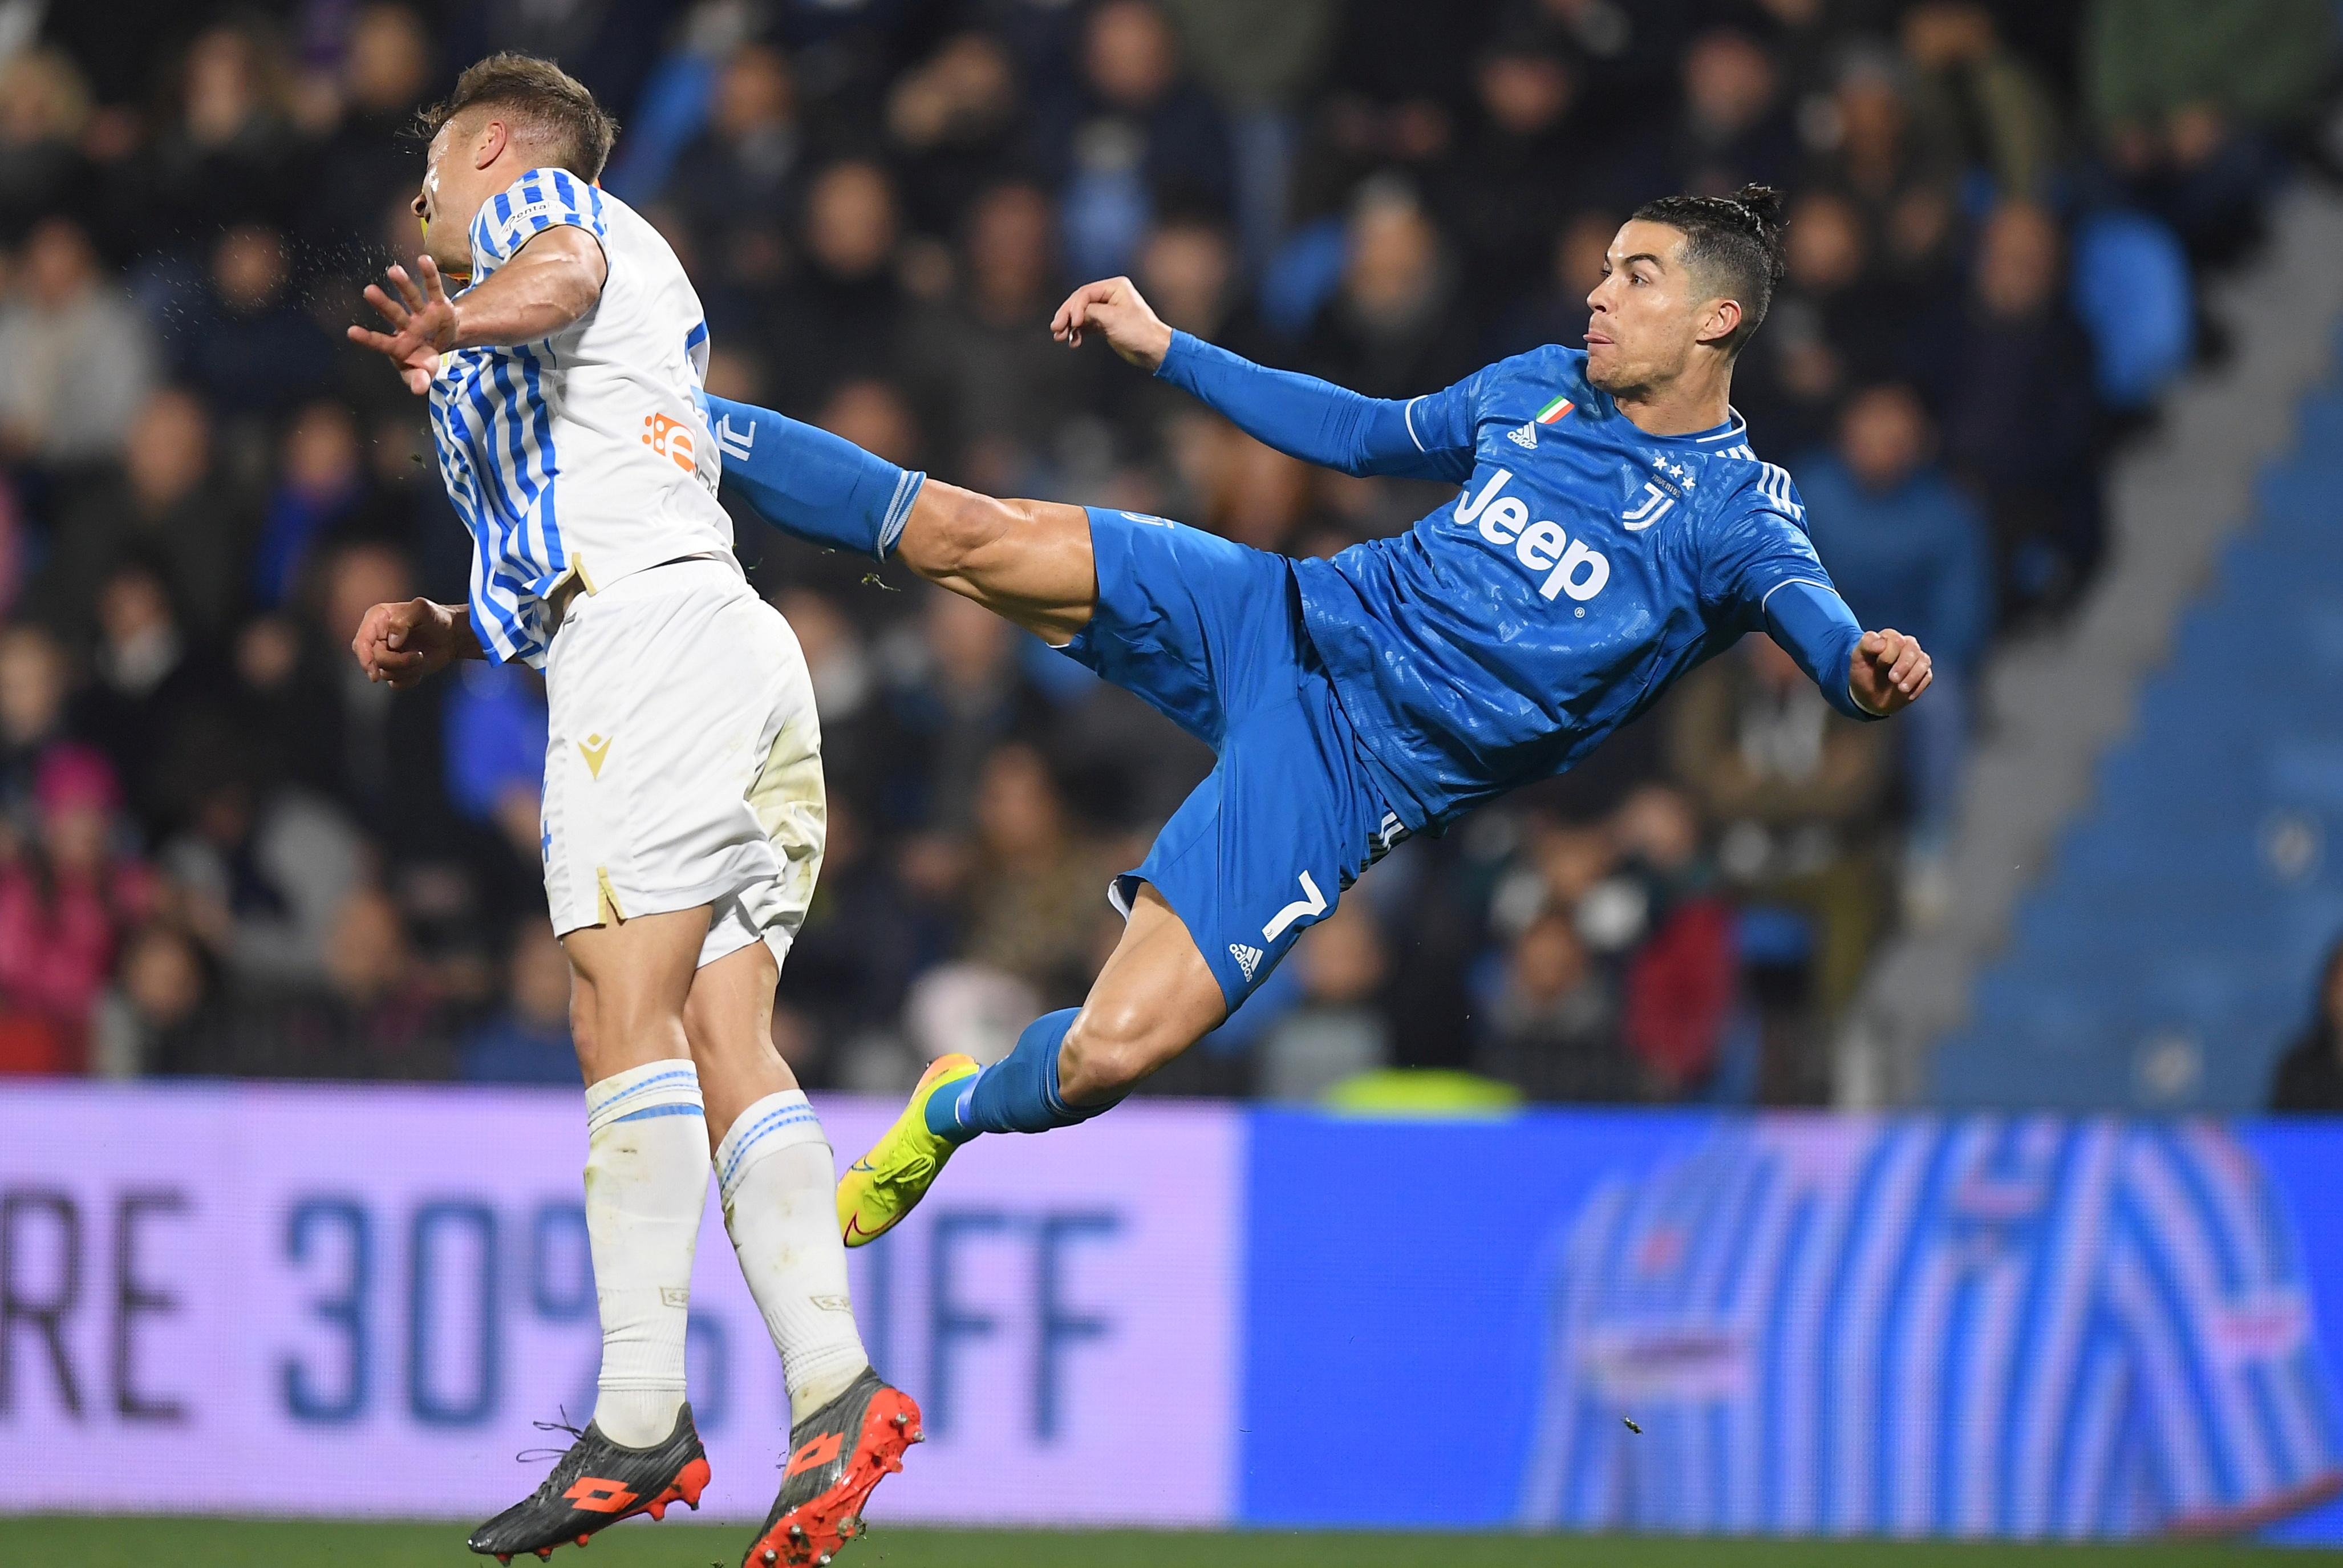 Bestmarke: Ronaldo traf im elften Serie-A-Spiel in Folge